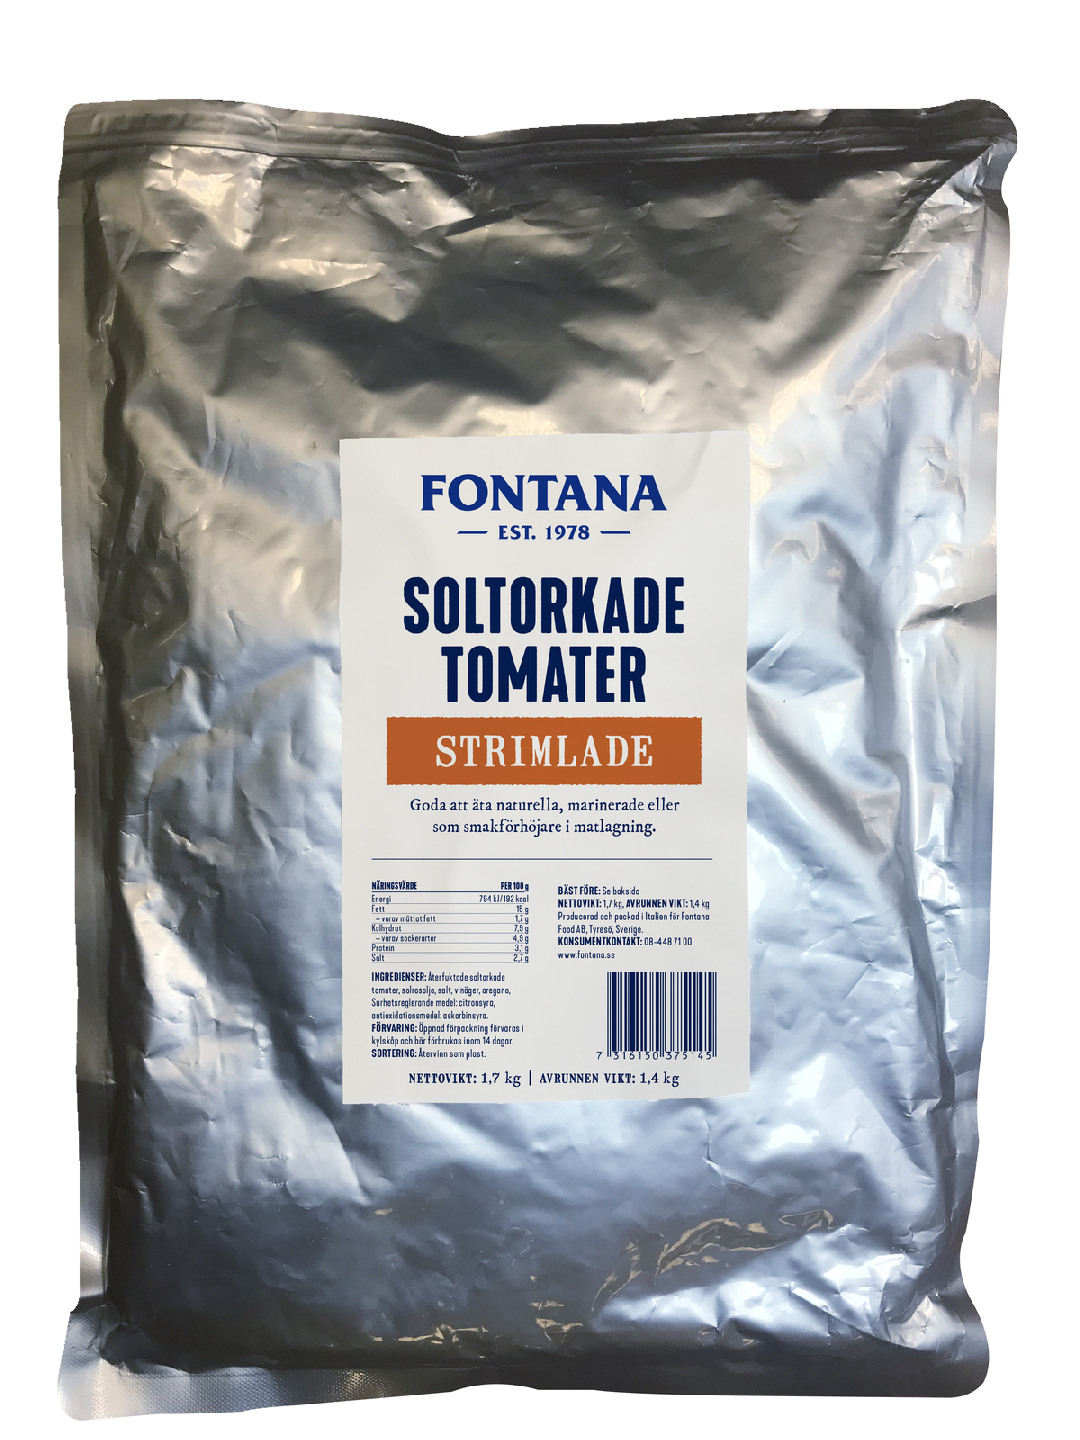 Fontana aurinkokuivattuja tomaatteja suikale 1,7kg/1,4kg pussi